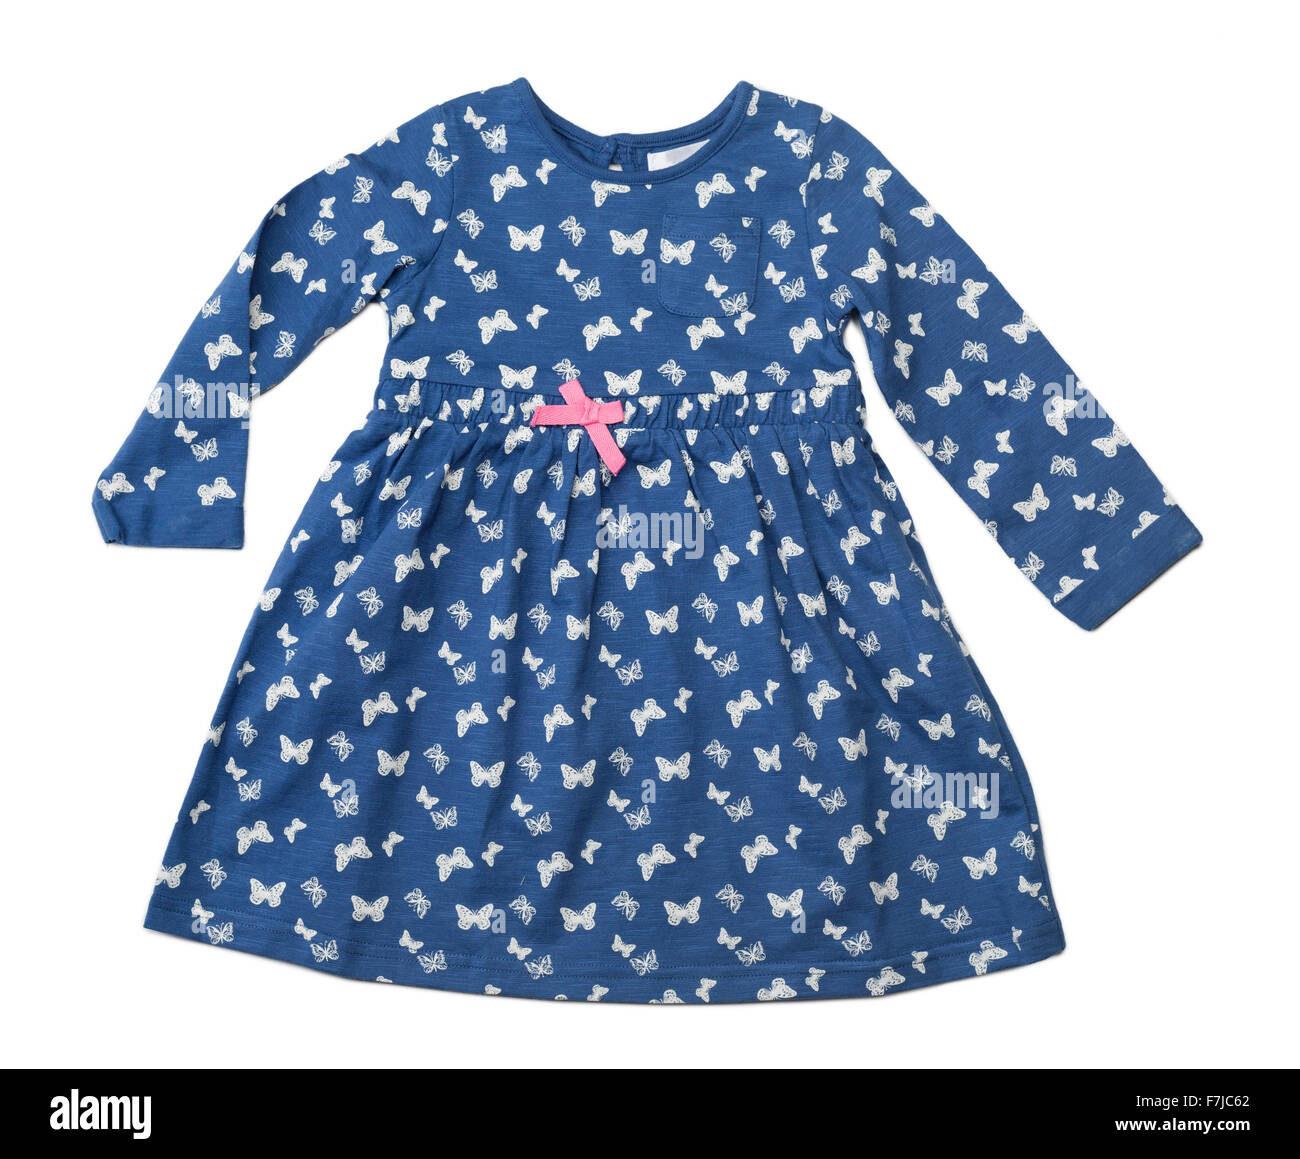 Bebé vestido azul con un patrón de mariposas. Aislar en blanco. Foto de stock